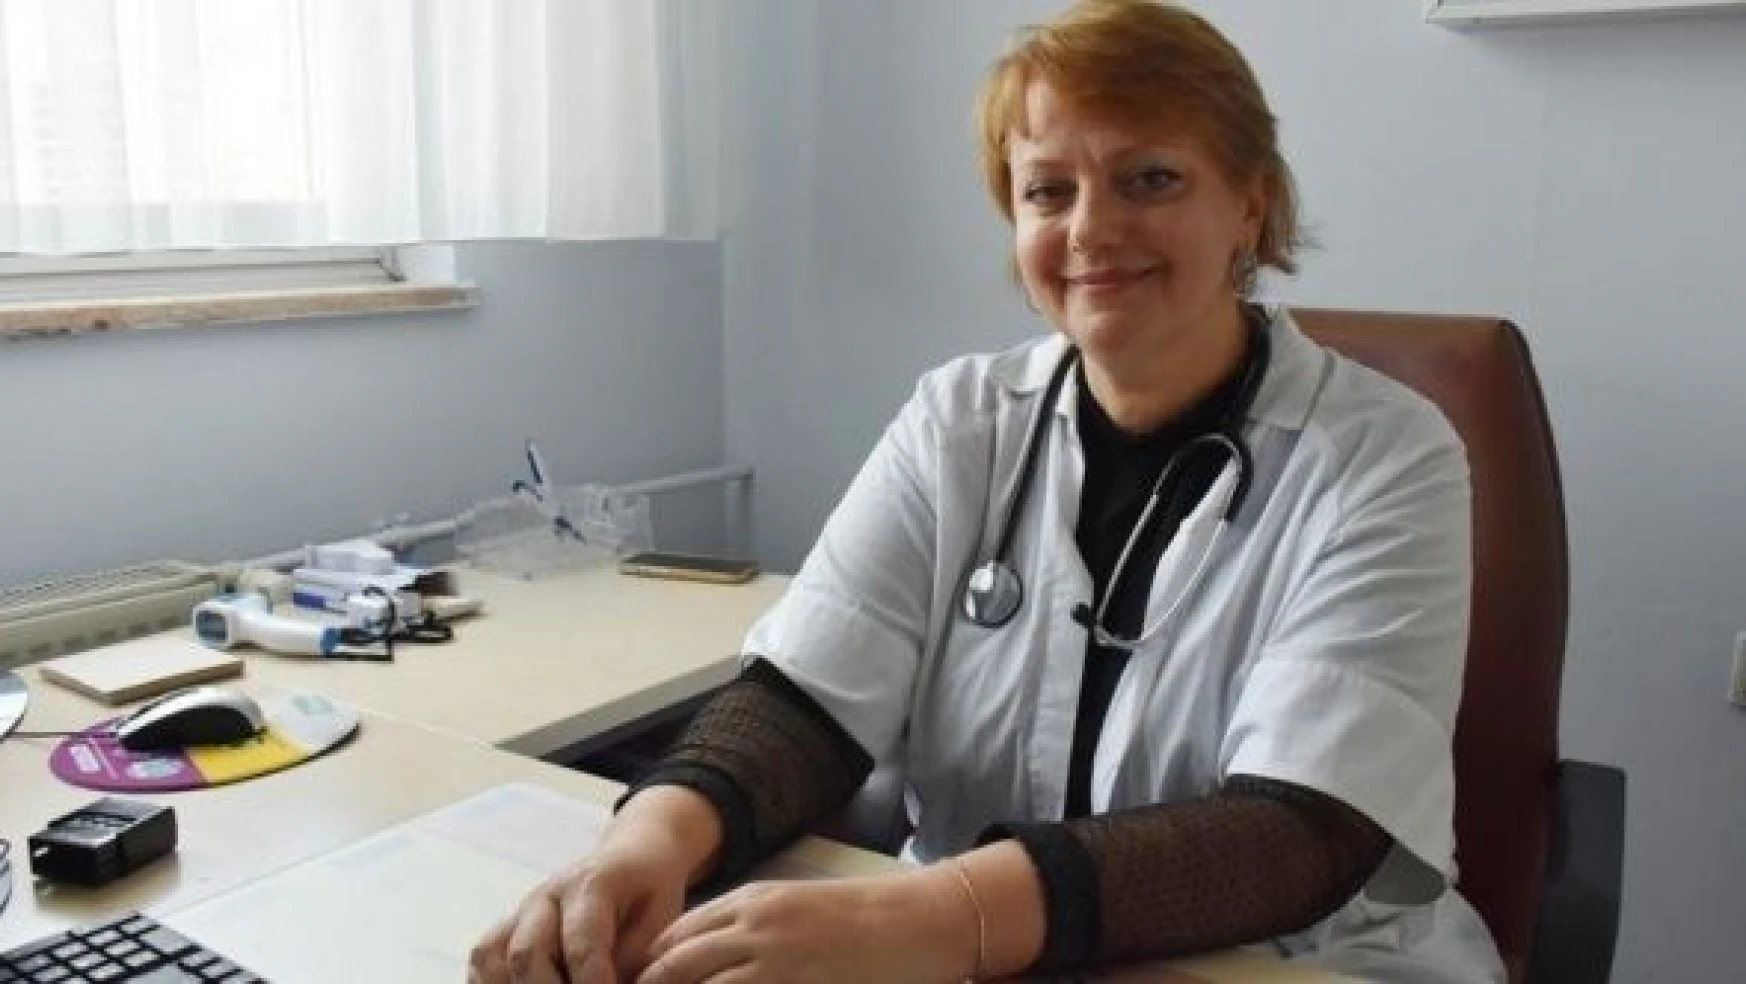 Ukraynalı kadın doktor Olena, Hakkari'de görev yapıyor